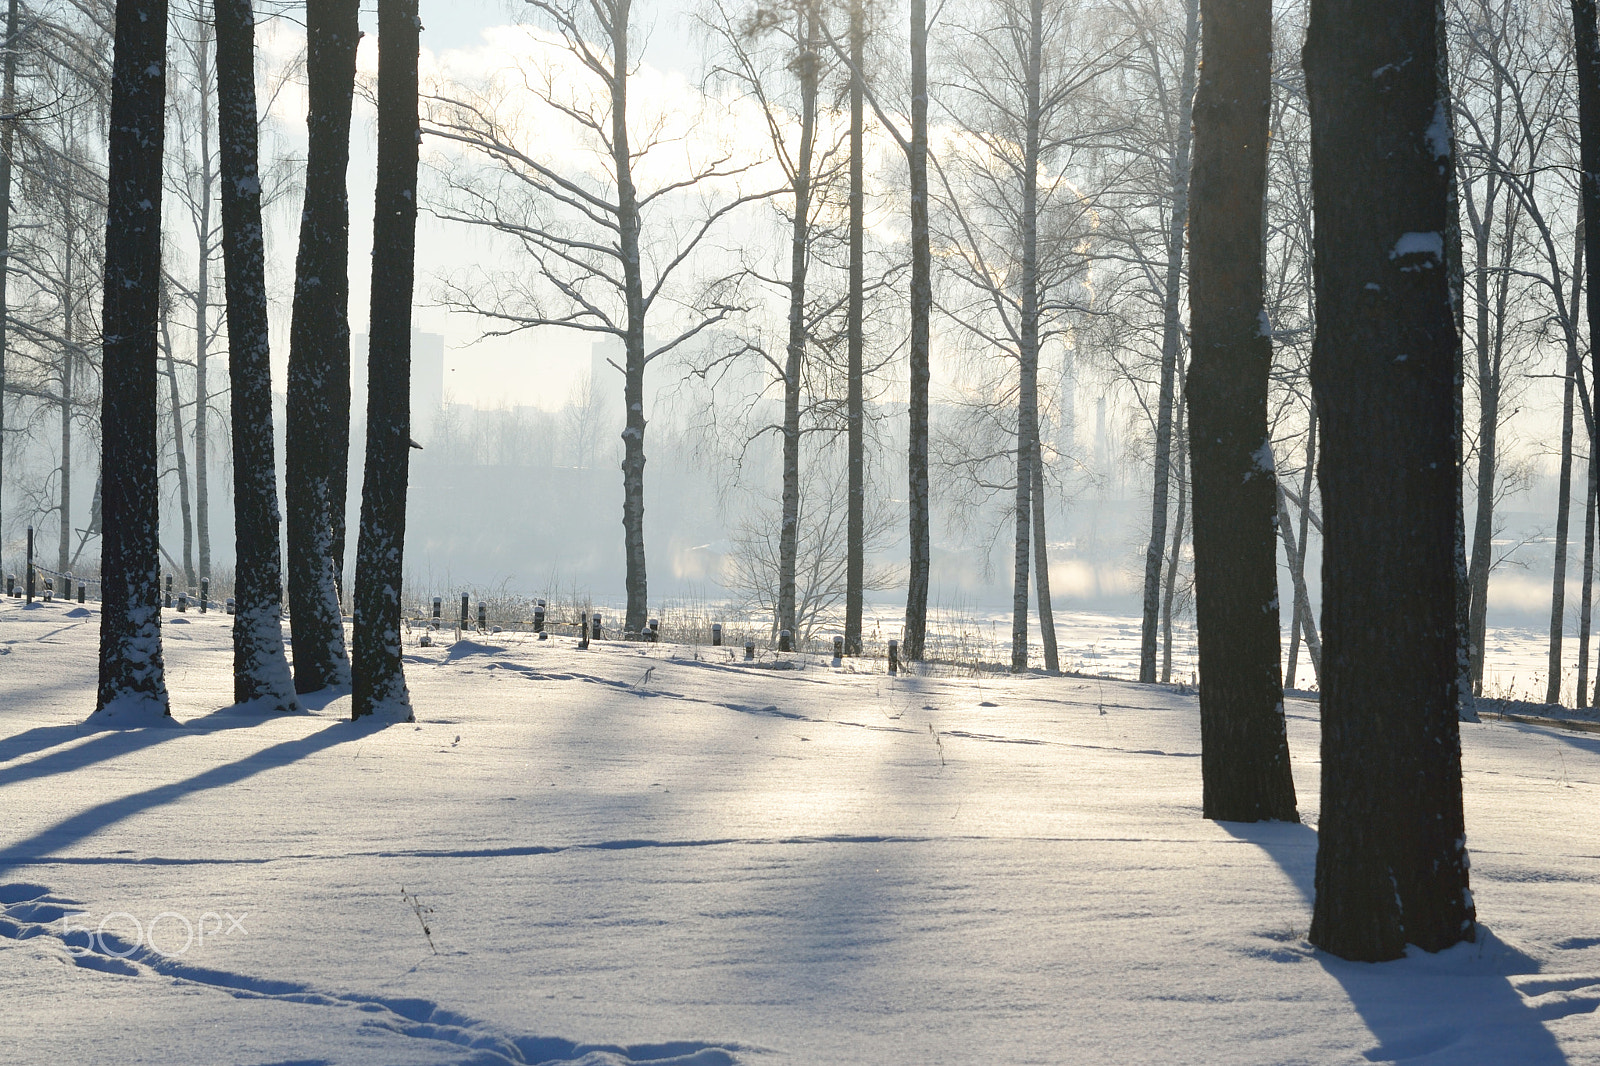 Nikon D3100 + Nikon AF-S Nikkor 24-85mm F3.5-4.5G ED VR sample photo. Winter landscape with trees. photography